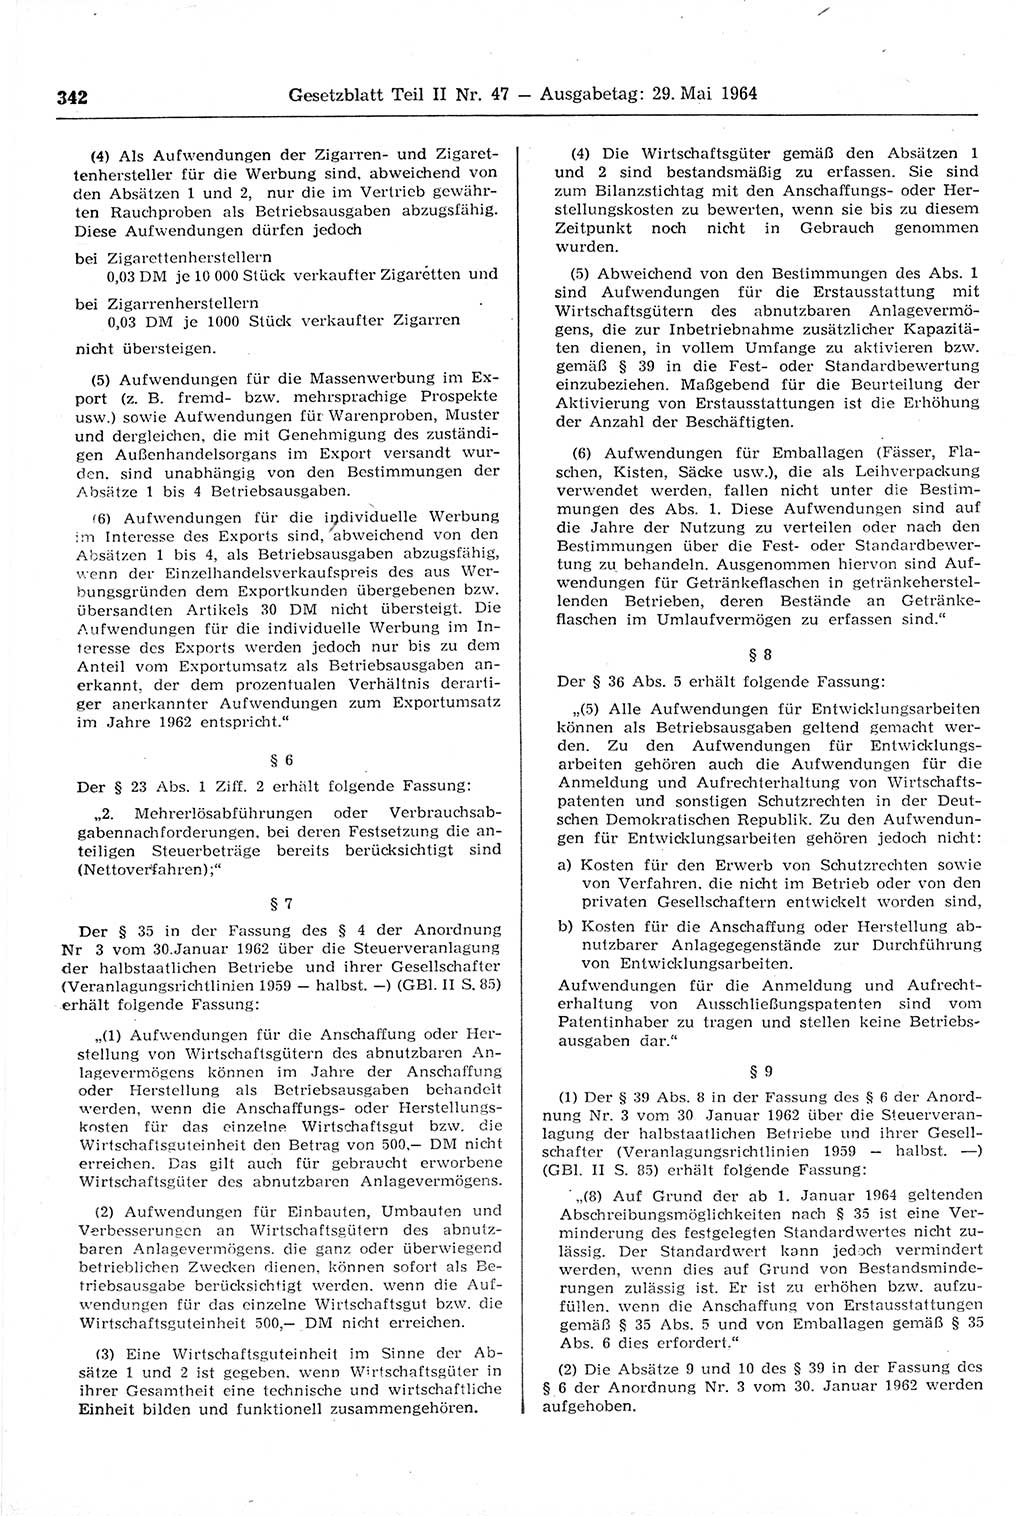 Gesetzblatt (GBl.) der Deutschen Demokratischen Republik (DDR) Teil ⅠⅠ 1964, Seite 342 (GBl. DDR ⅠⅠ 1964, S. 342)